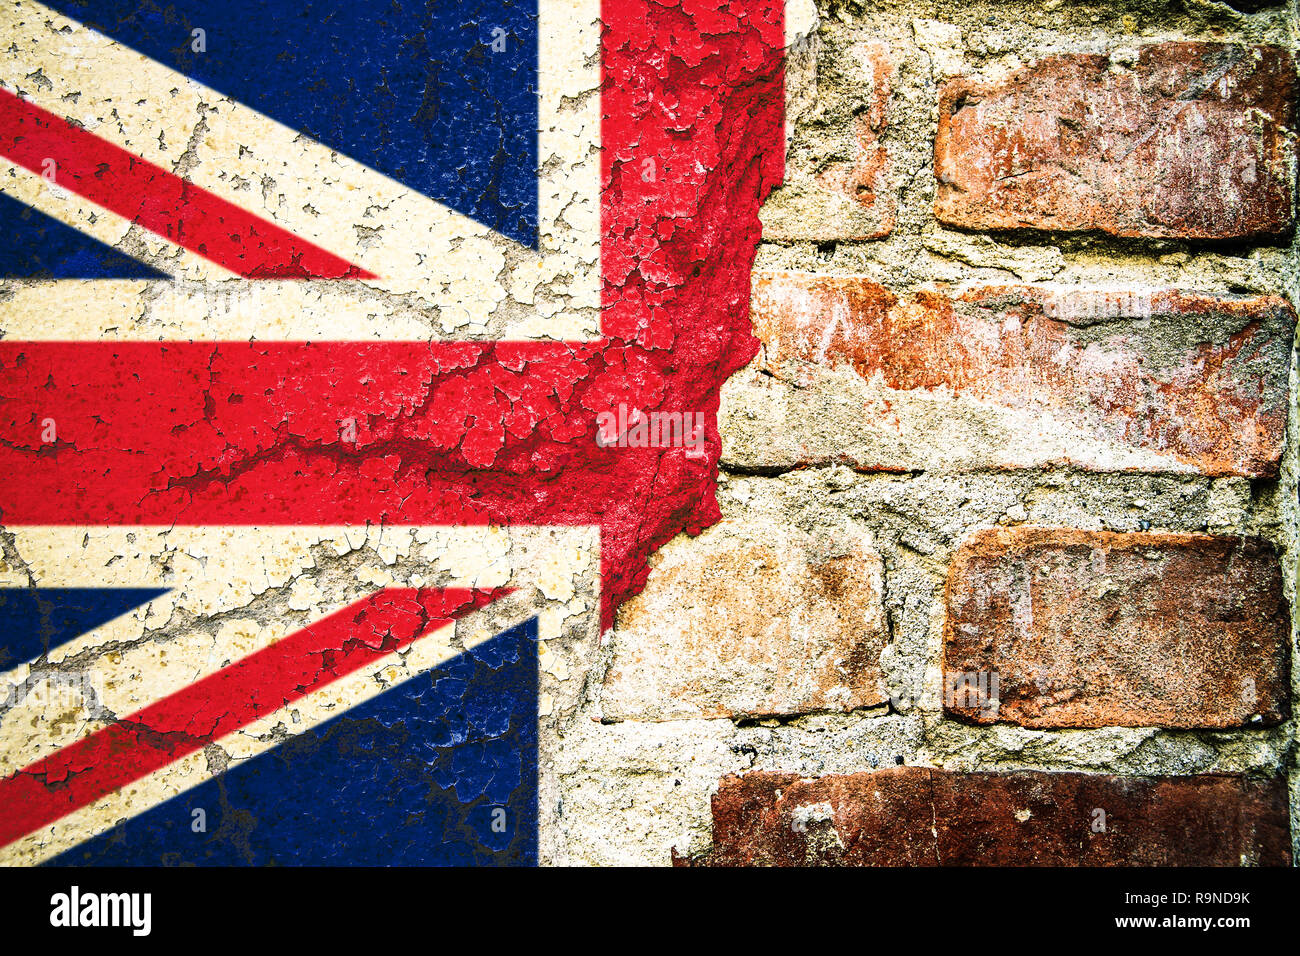 Regno Unito (UK) bandiera bandiera dipinta incrinato diviso pareti scrostate e parete di mattoni cemento facciata. Concetto di immagine per la Gran Bretagna, British, Inghilterra, Brexi Foto Stock